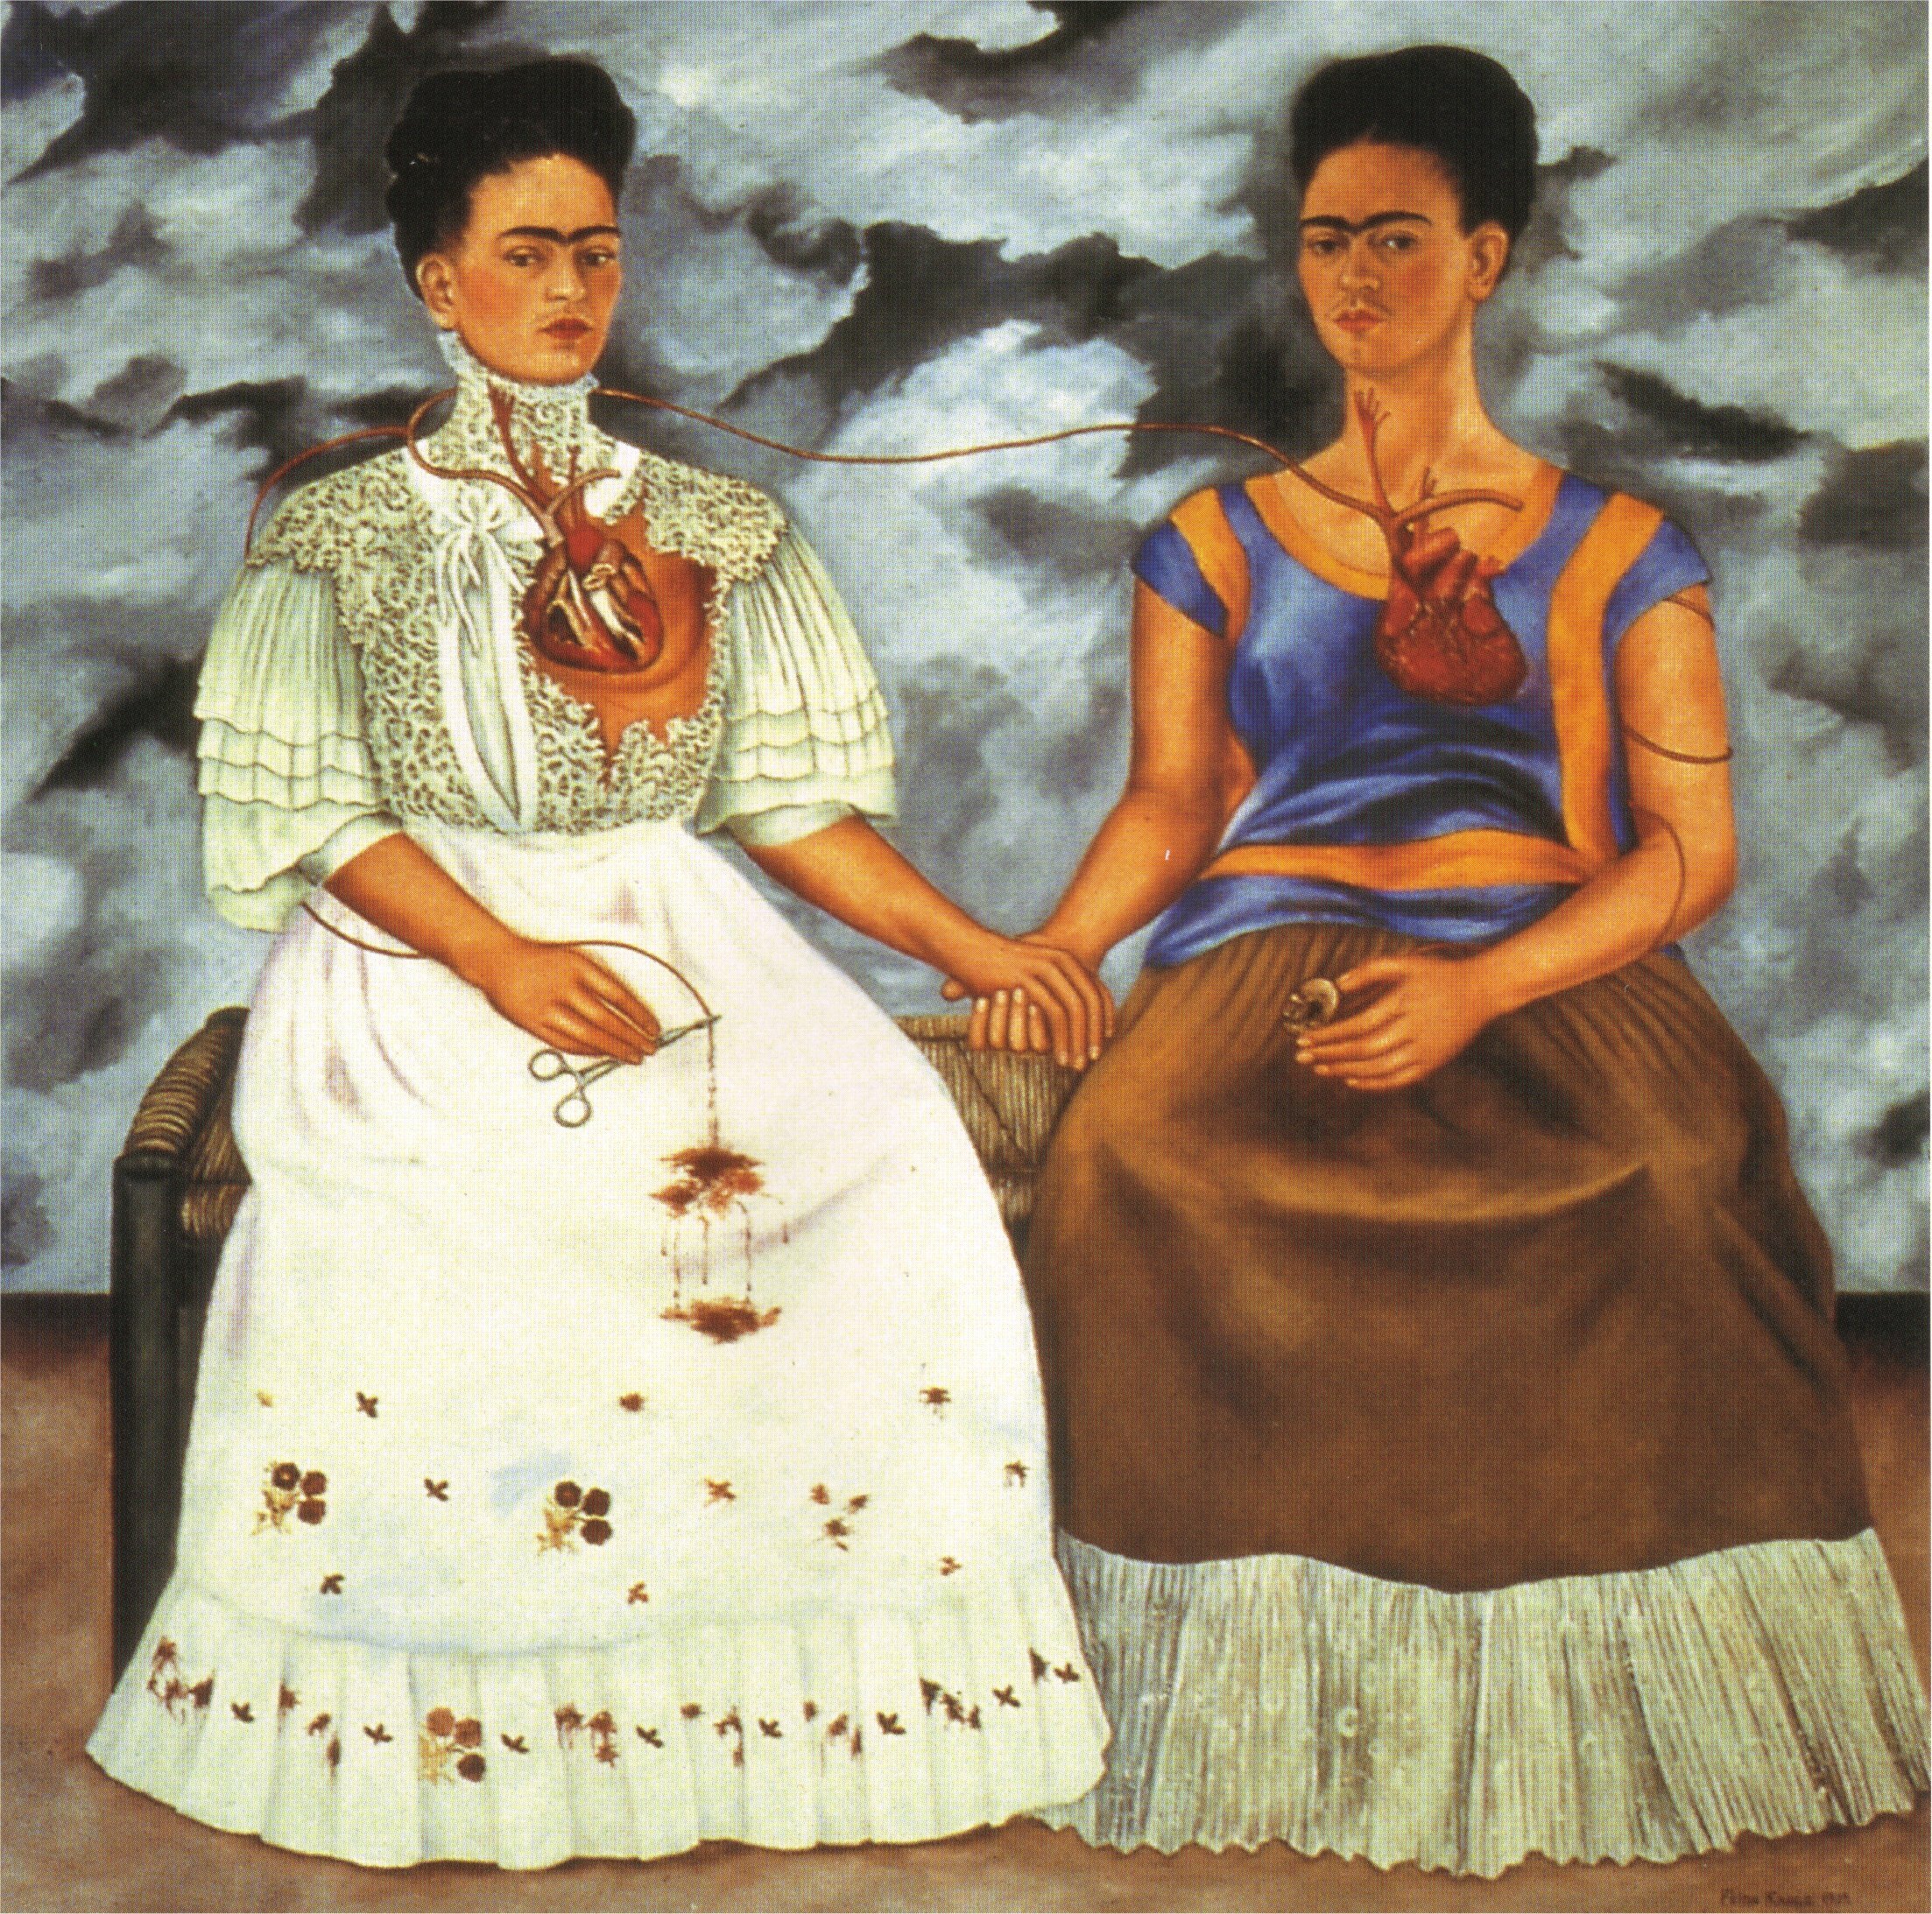 Frida Kahlo zu kaufen: Erwerben Sie Kunstwerke inspirierten von Frida